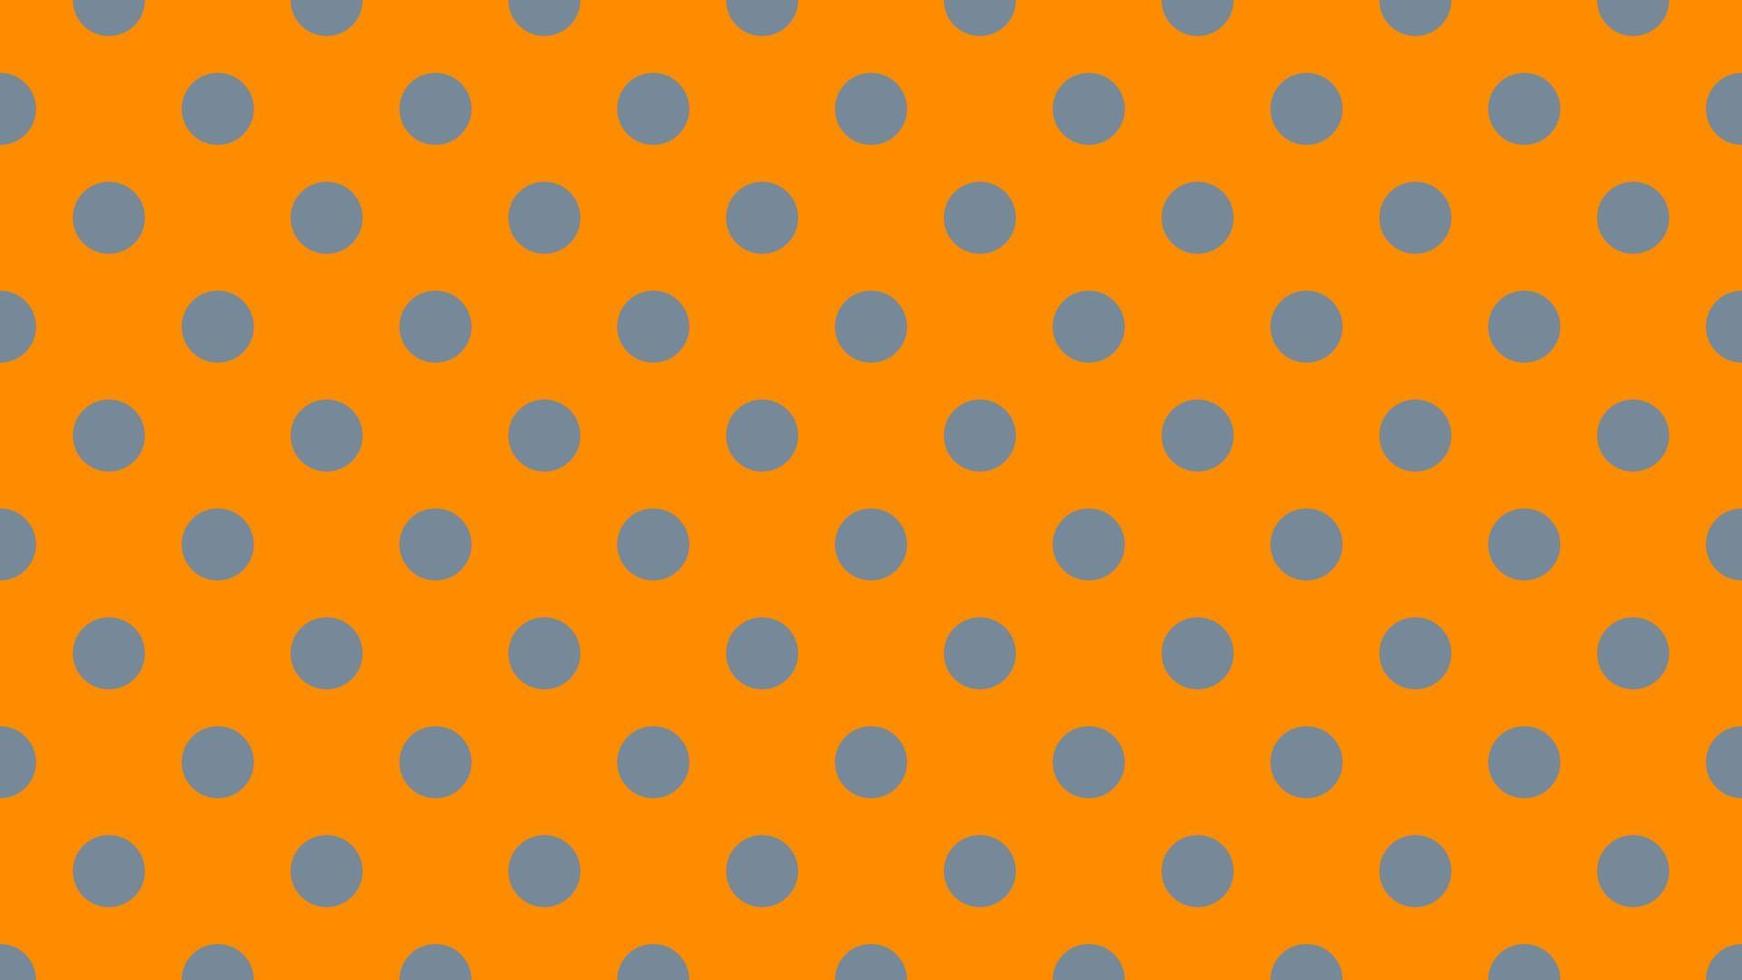 leggero ardesia grigio colore polka puntini al di sopra di buio arancia sfondo vettore